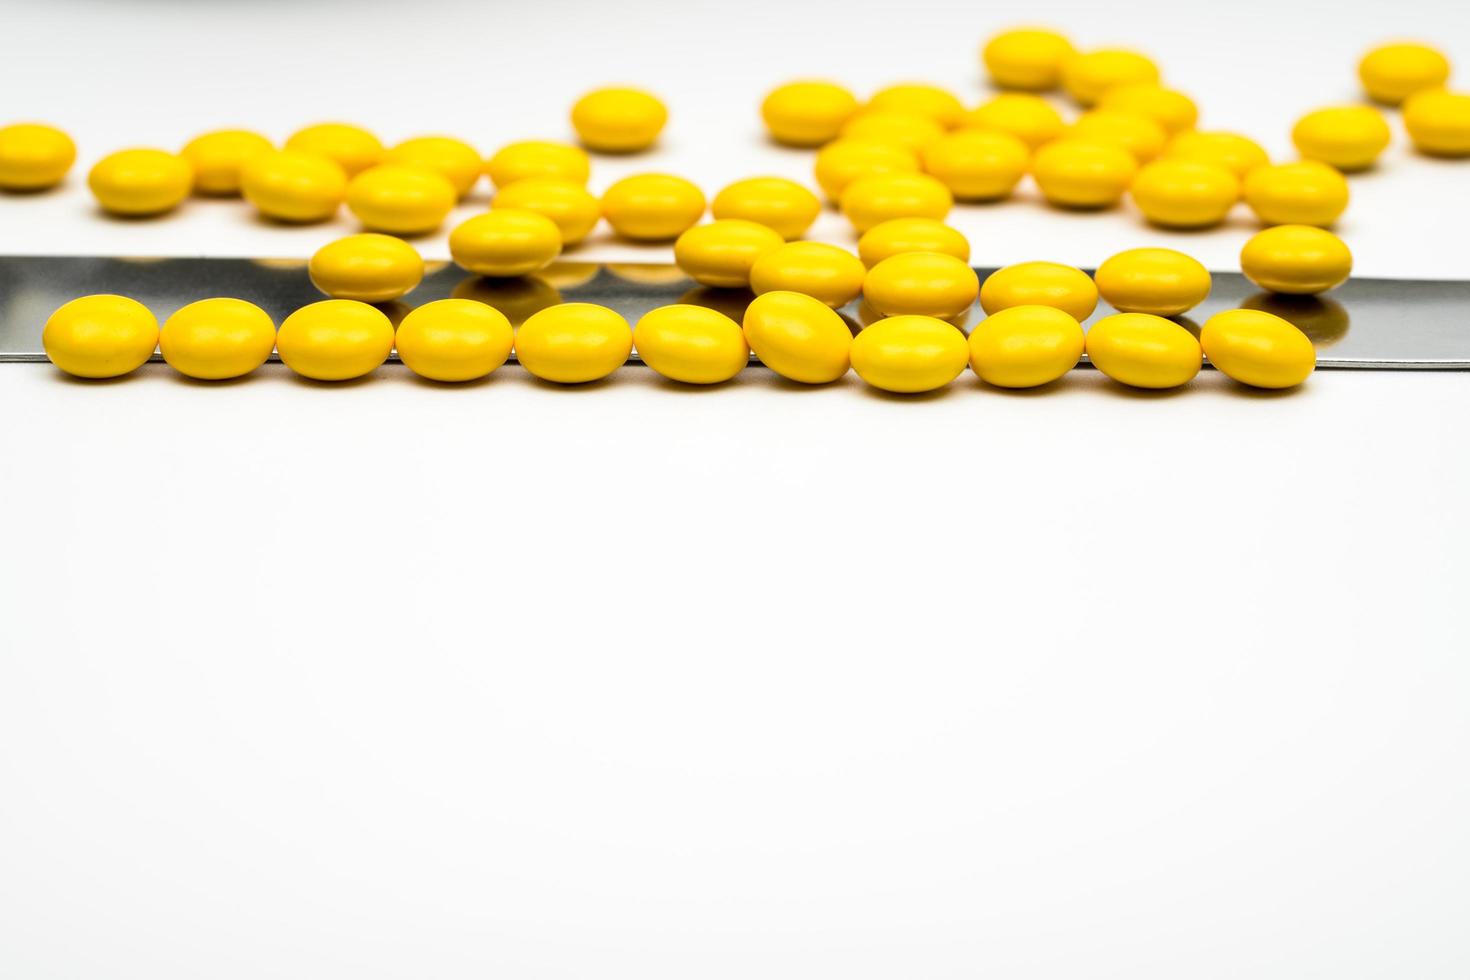 macro shot detalle de pastillas recubiertas de azúcar redondas amarillas y espátula de acero inoxidable sobre fondo blanco con espacio de copia foto